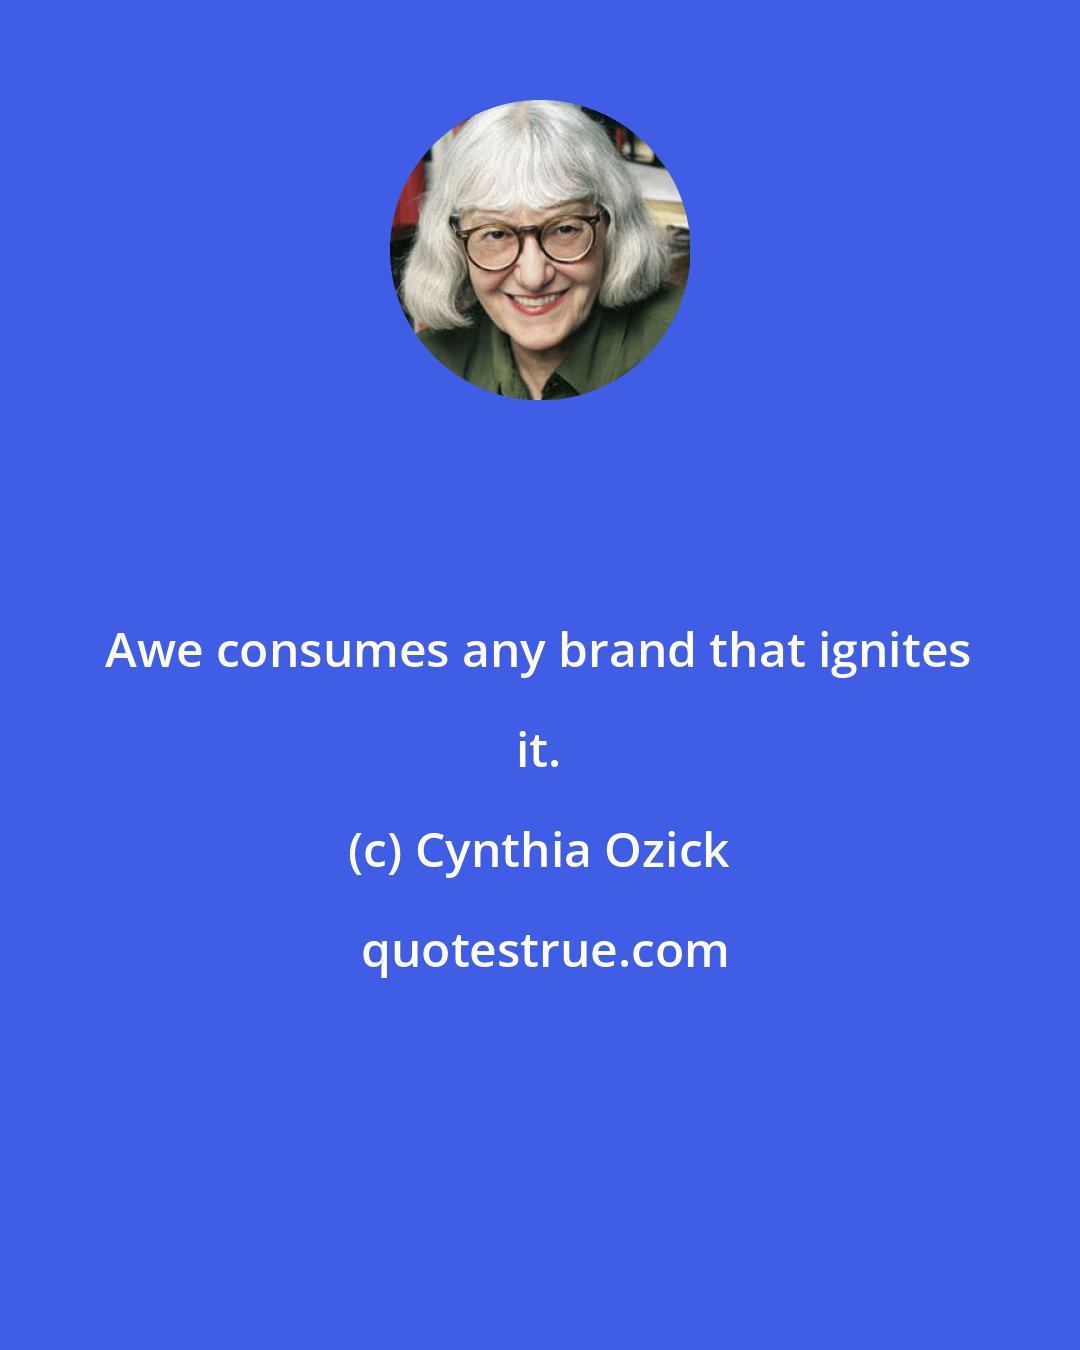 Cynthia Ozick: Awe consumes any brand that ignites it.